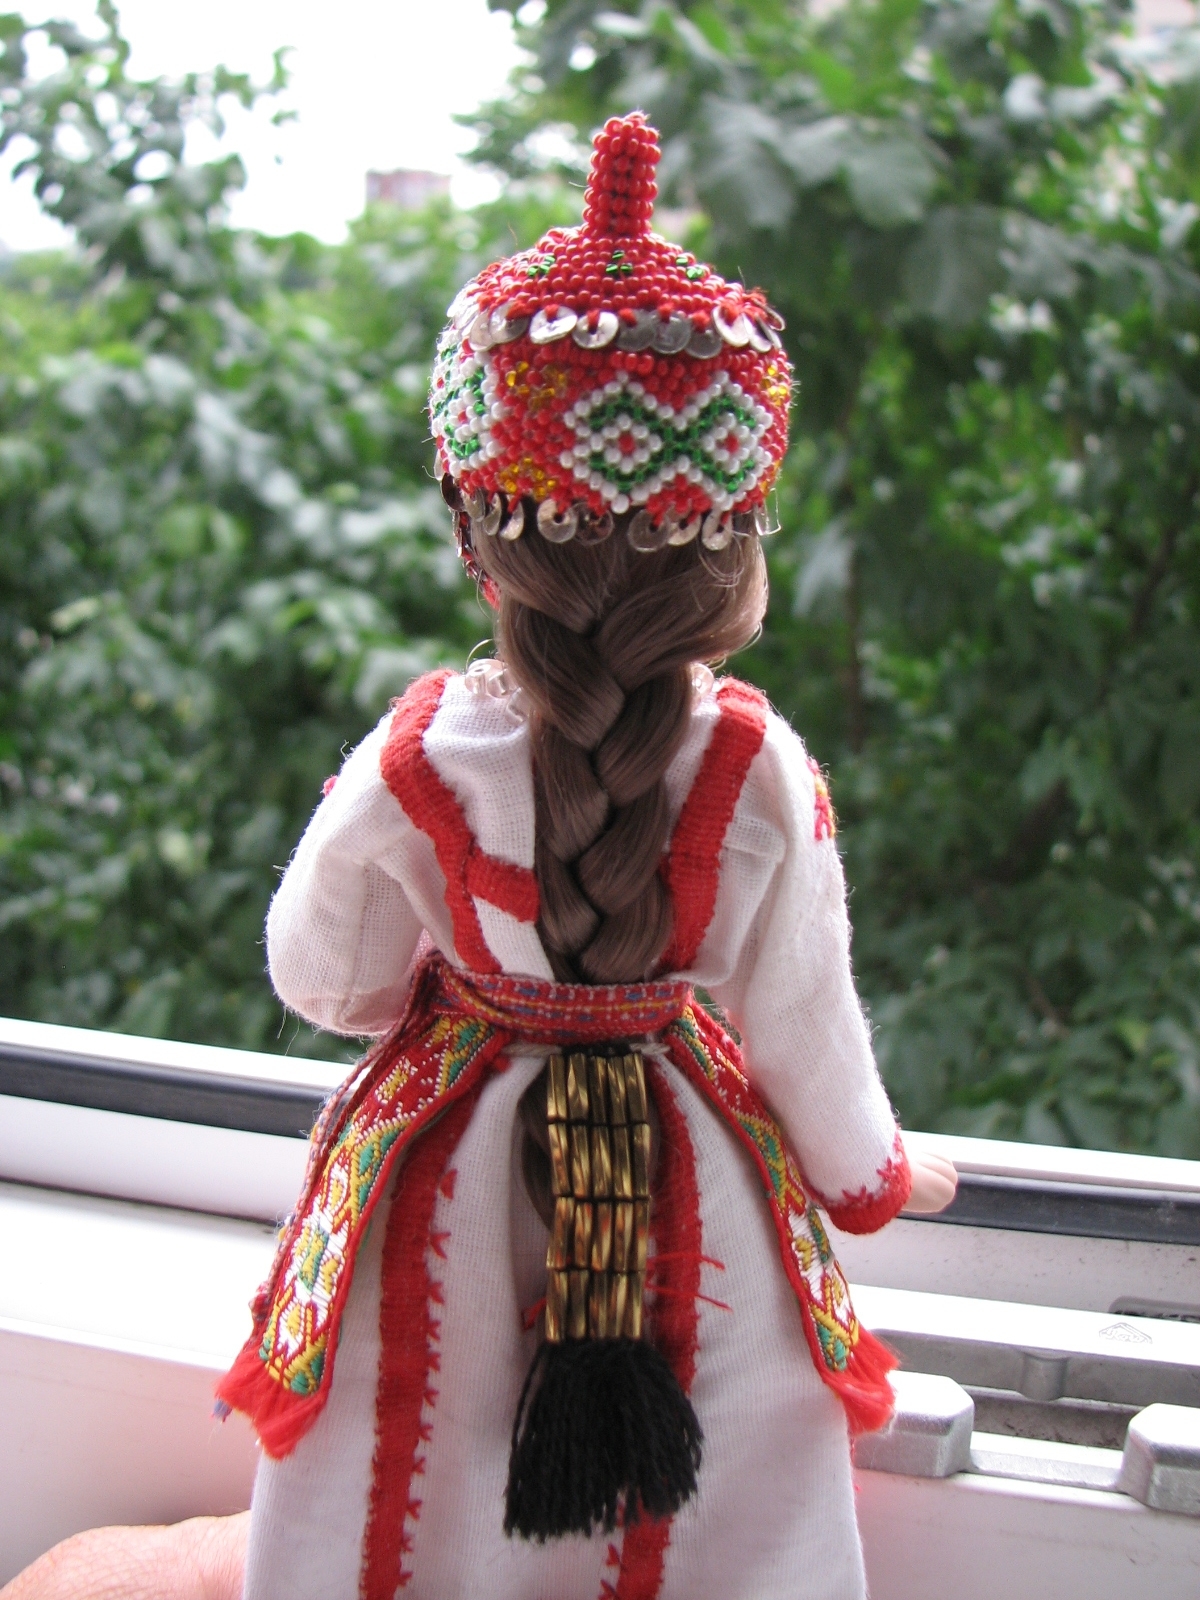 Куклы в народных костюмах – Галерея наших работ – ТОЛЬКО ФОТО